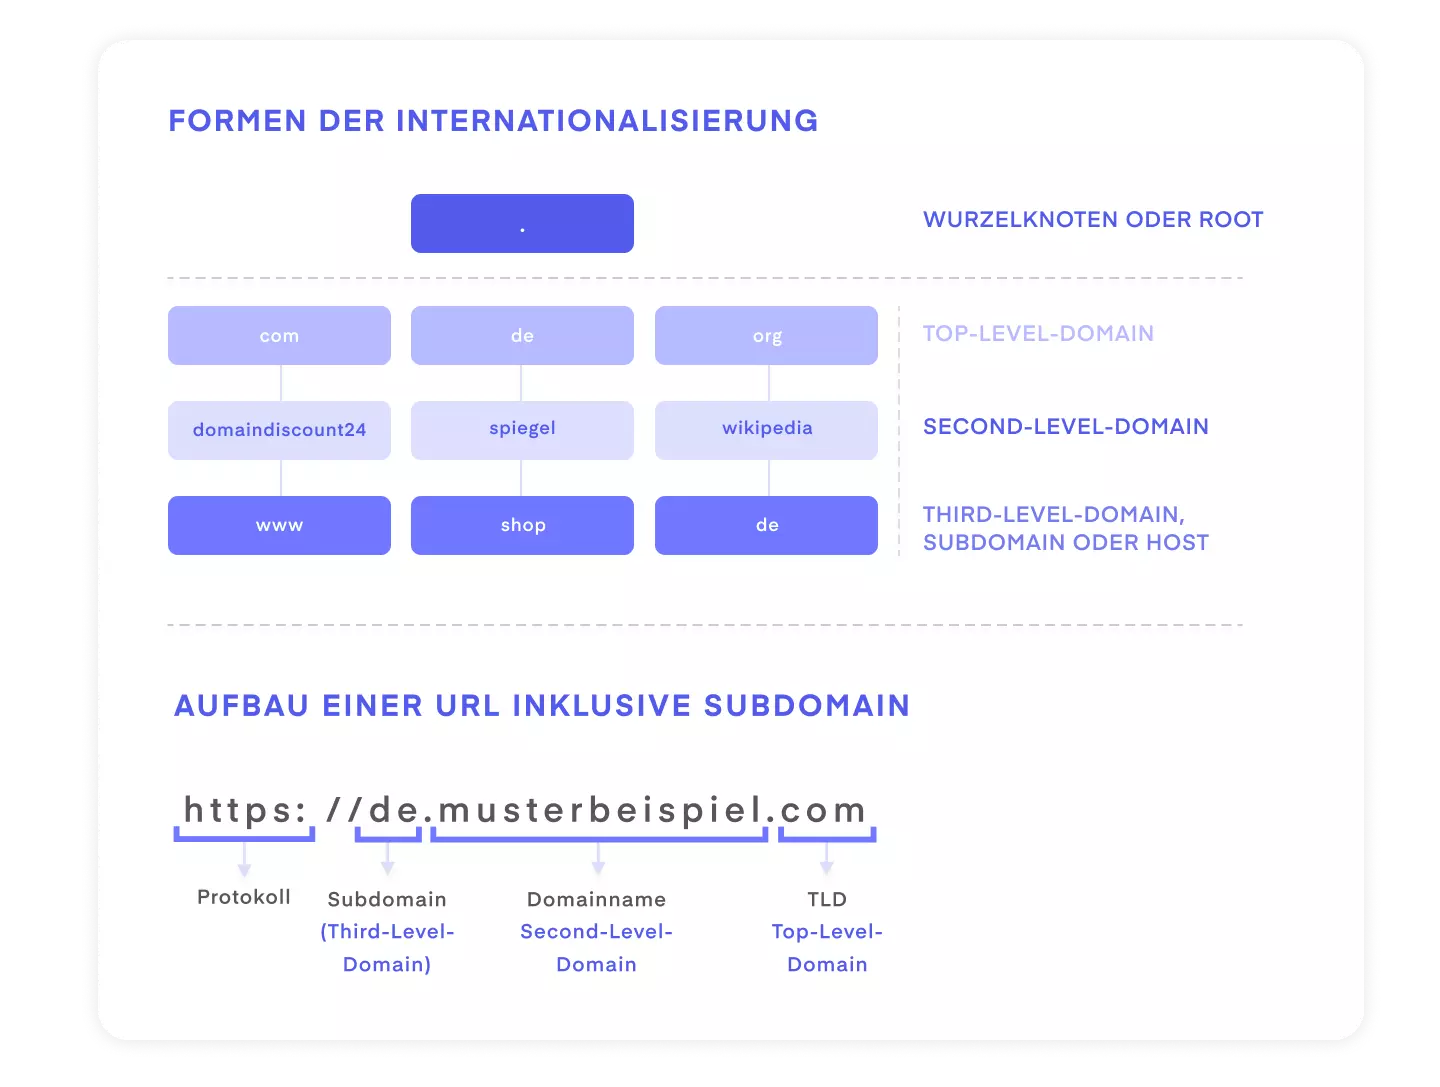 Schaubild: Domain Struktur und Aufbau einer URL im Rahmen der Internationalisierung von Webseiten